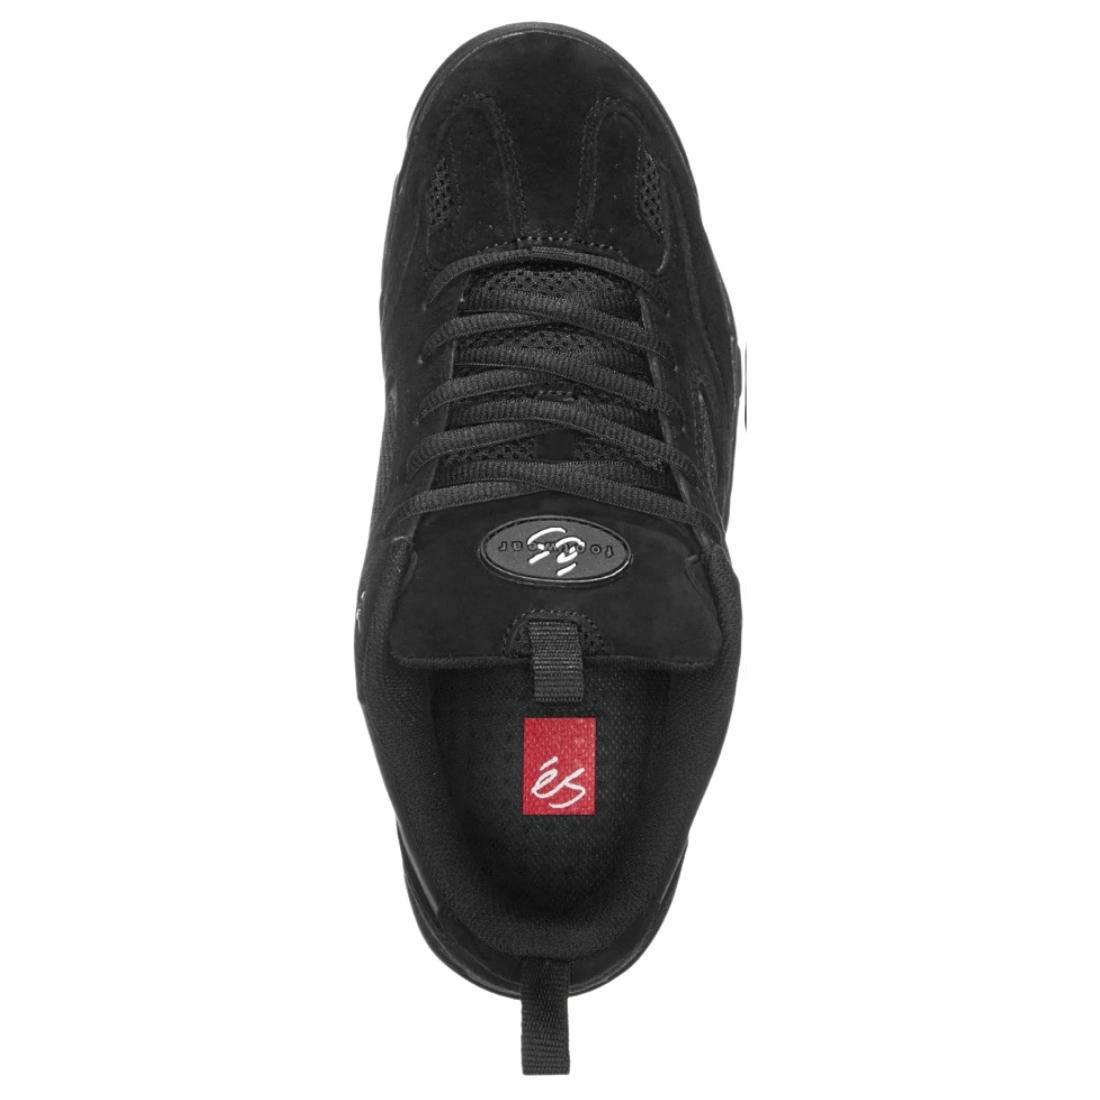 eS Quattro Plus Skate Shoes - Black/Black